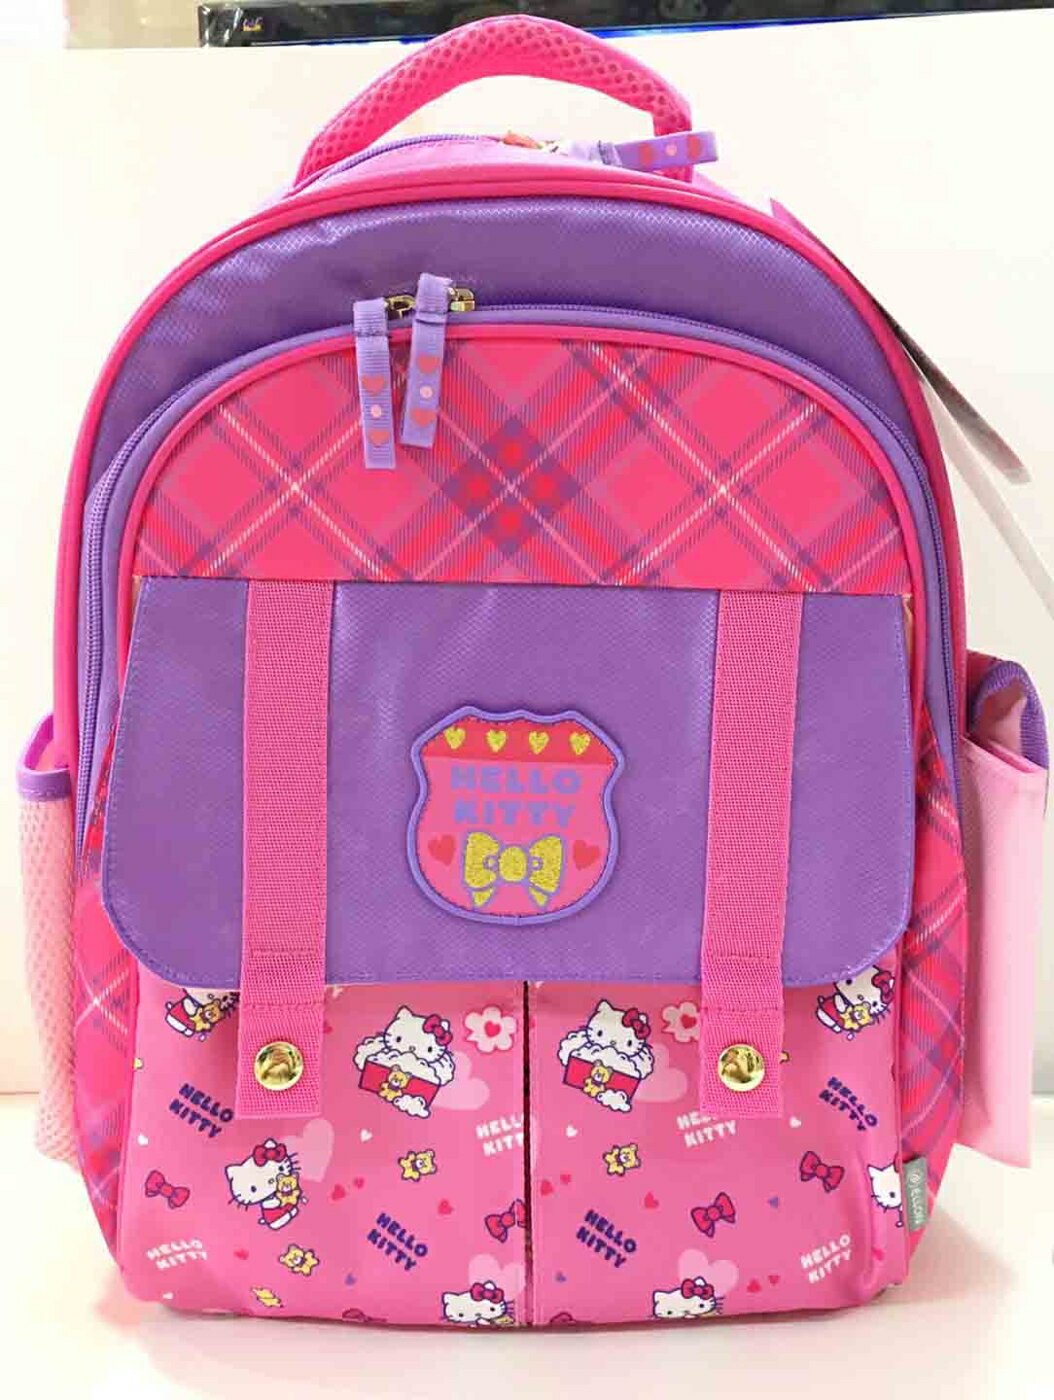 【震撼精品百貨】Hello Kitty 凱蒂貓 KITTY後背包/書包 粉紫色 小熊#97719 震撼日式精品百貨